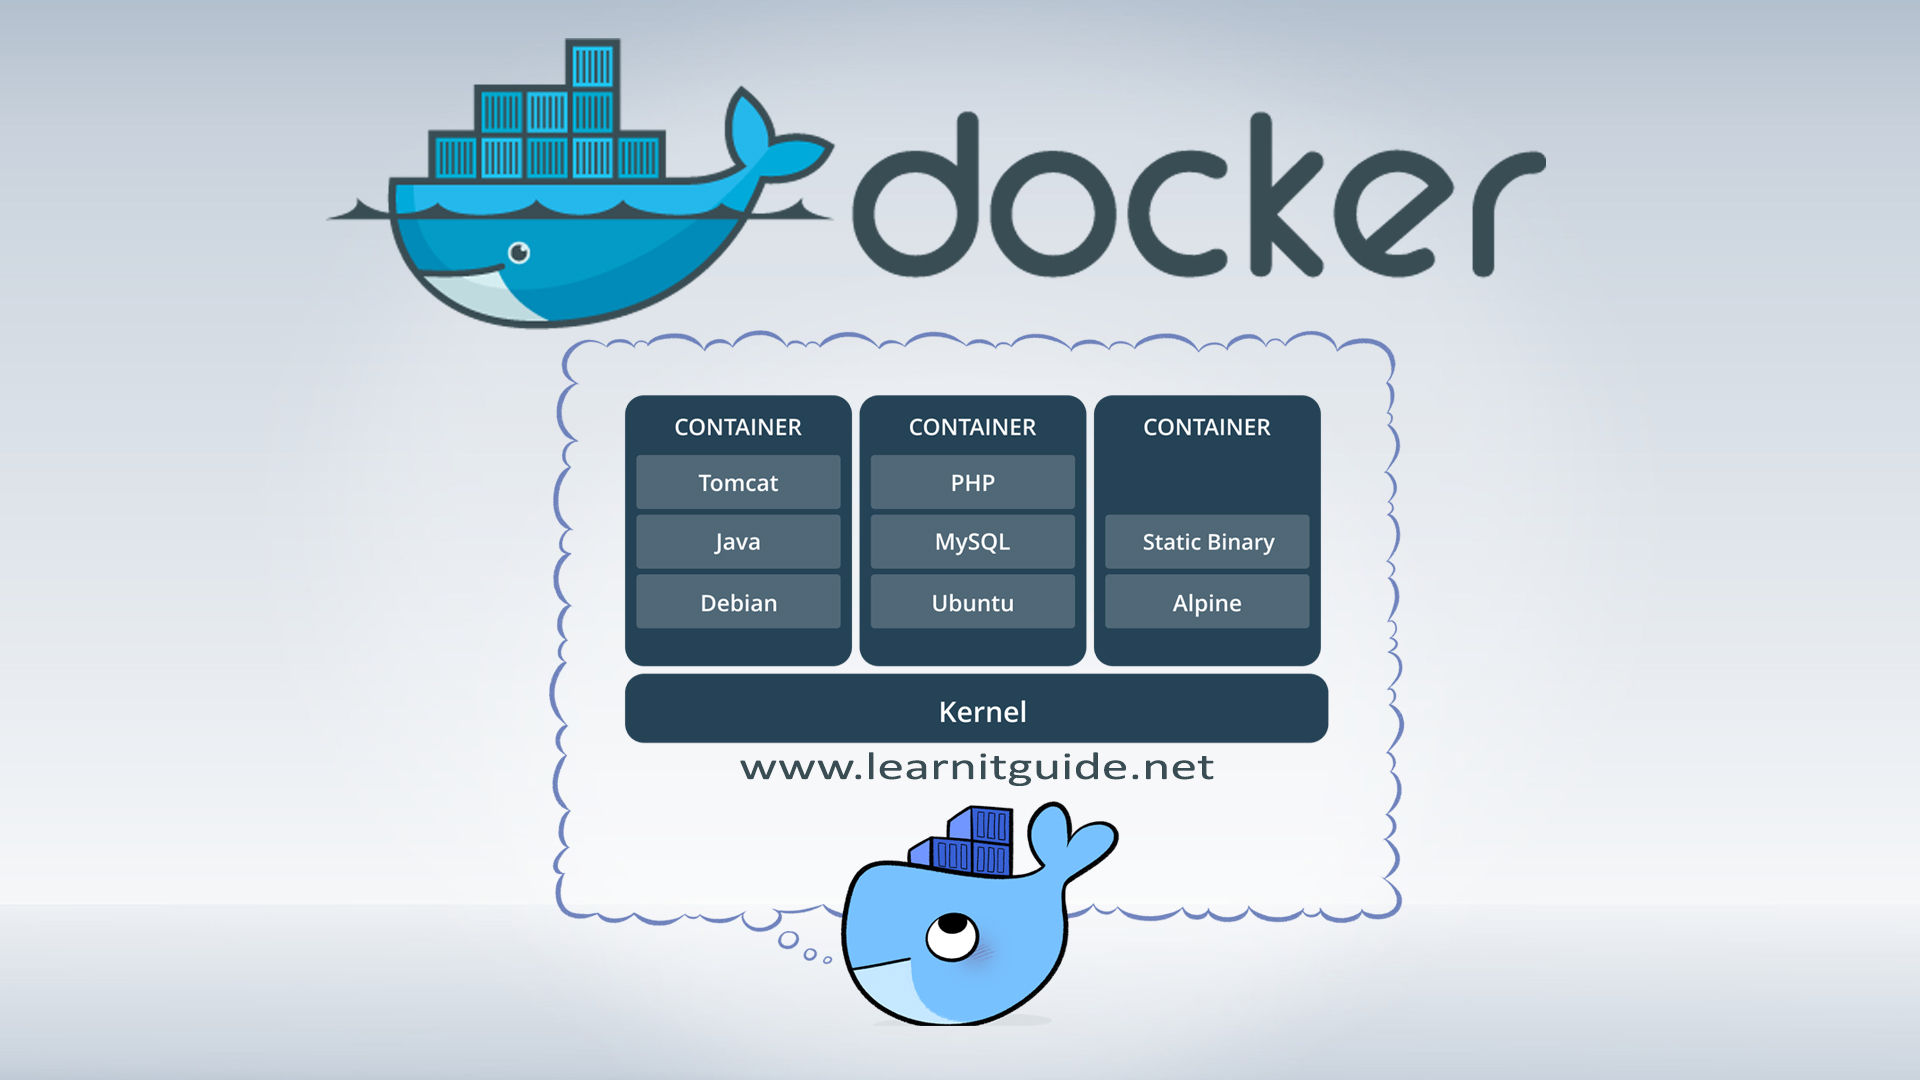 Docker backup